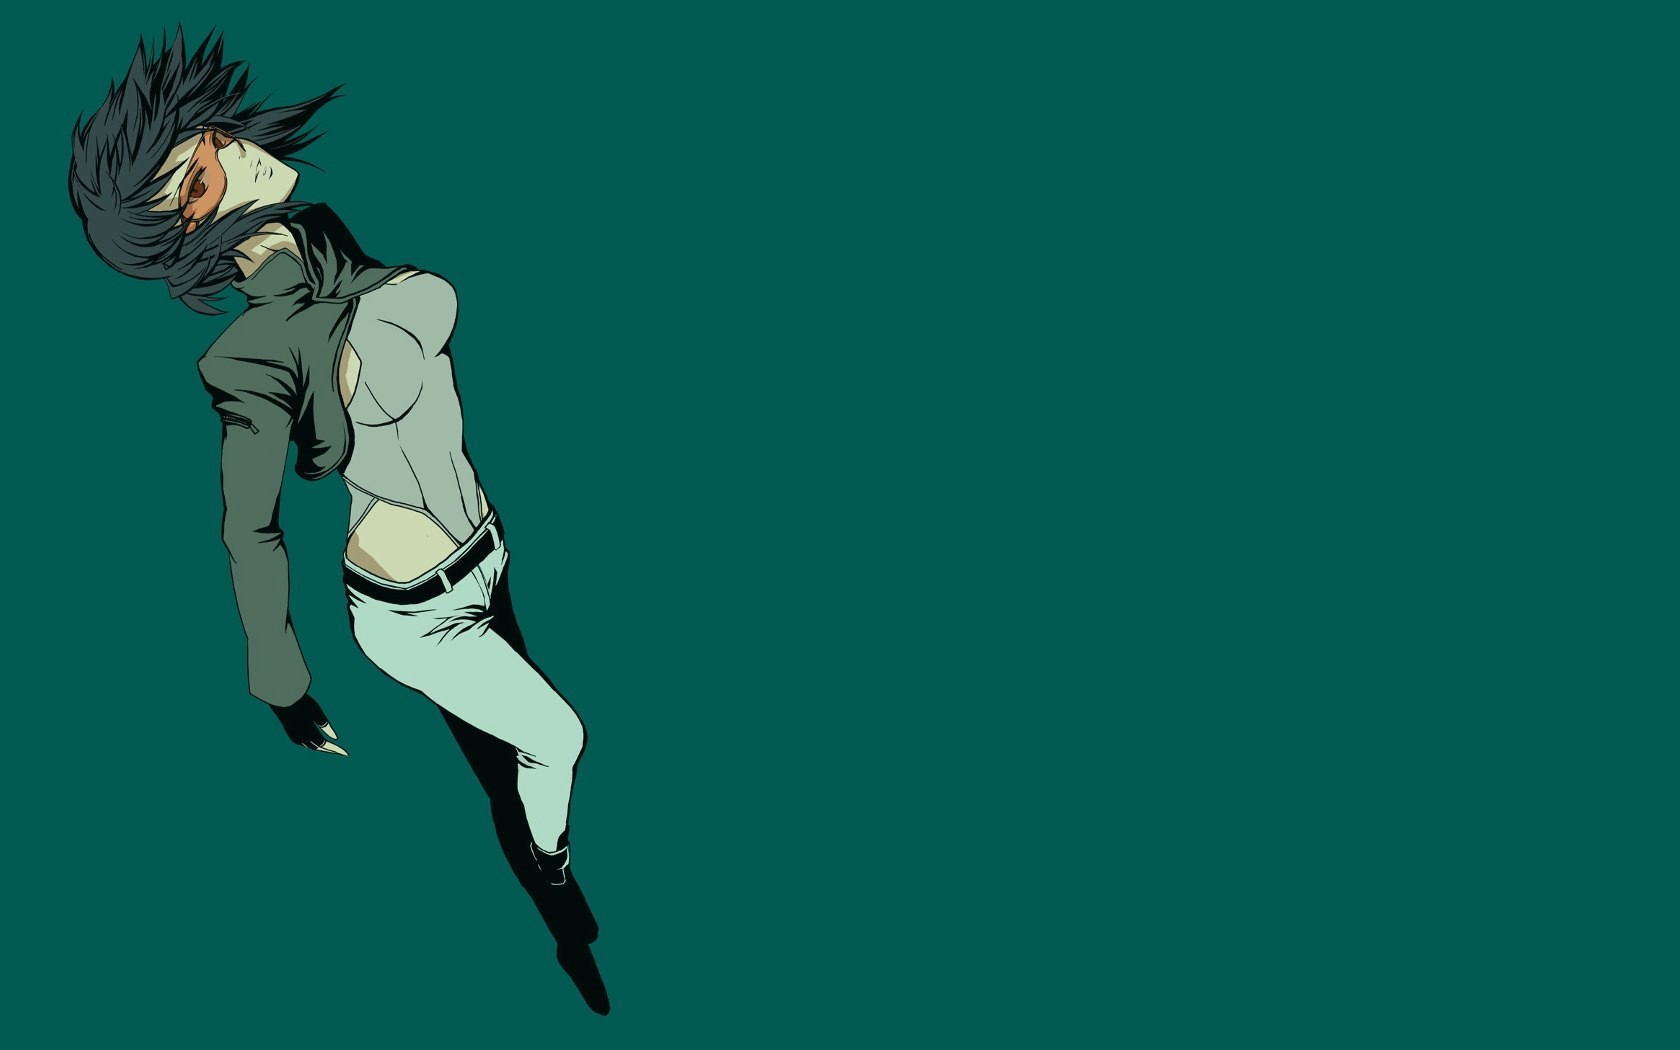 シェルの幽霊壁紙hd,緑,漫画,アニメ,架空の人物,アニメーション